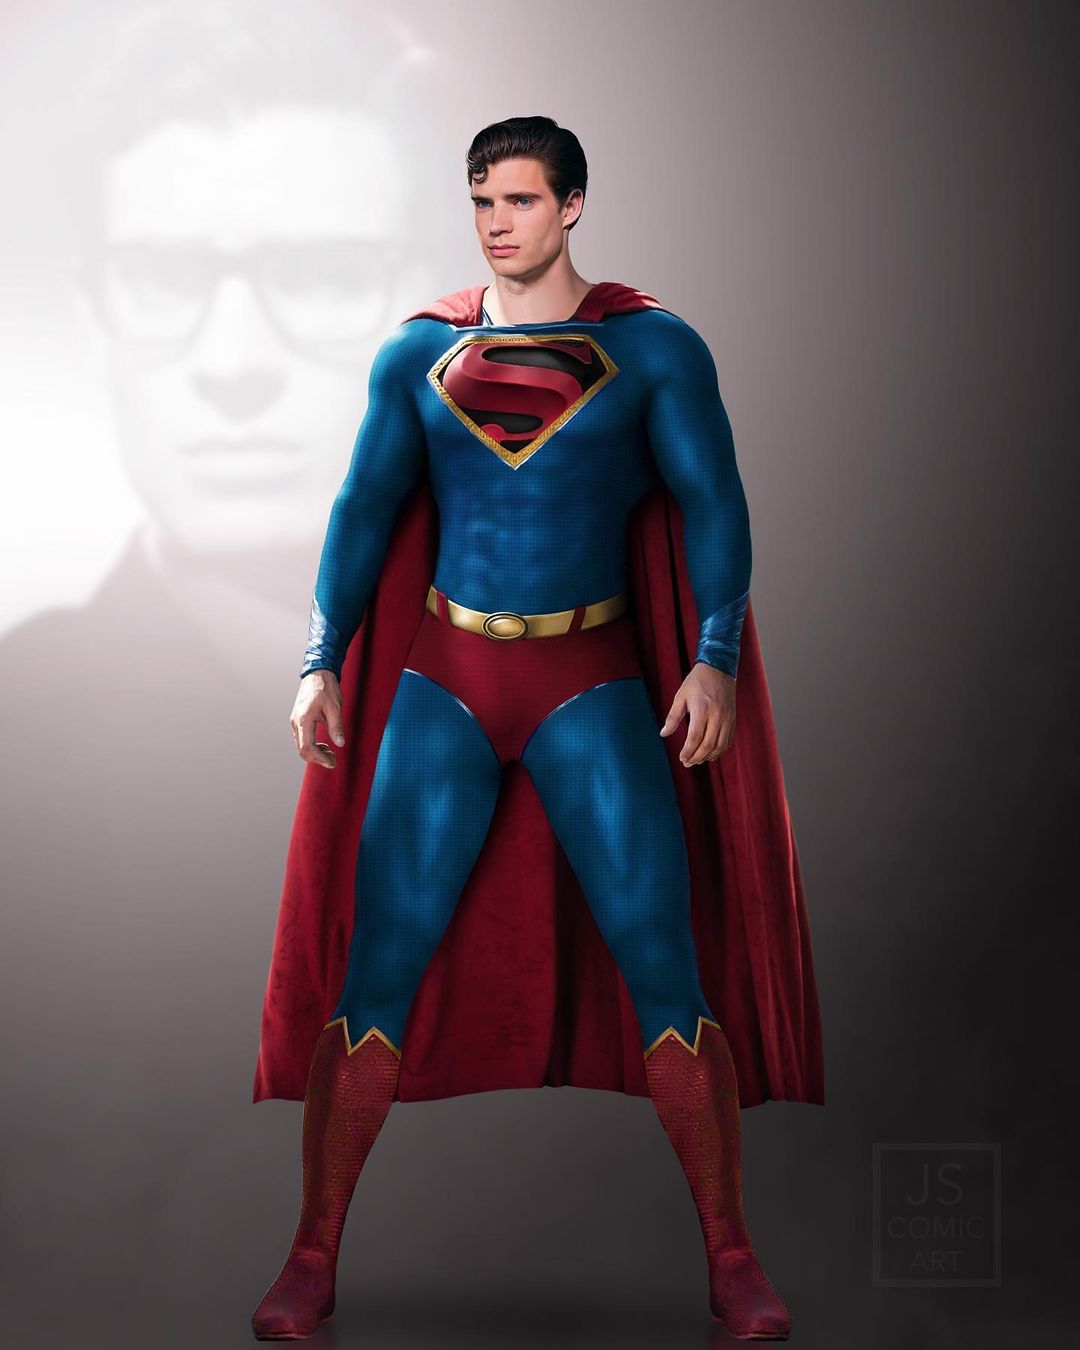 Quem é o novo Superman? Tudo sobre a carreira de David Corenswet